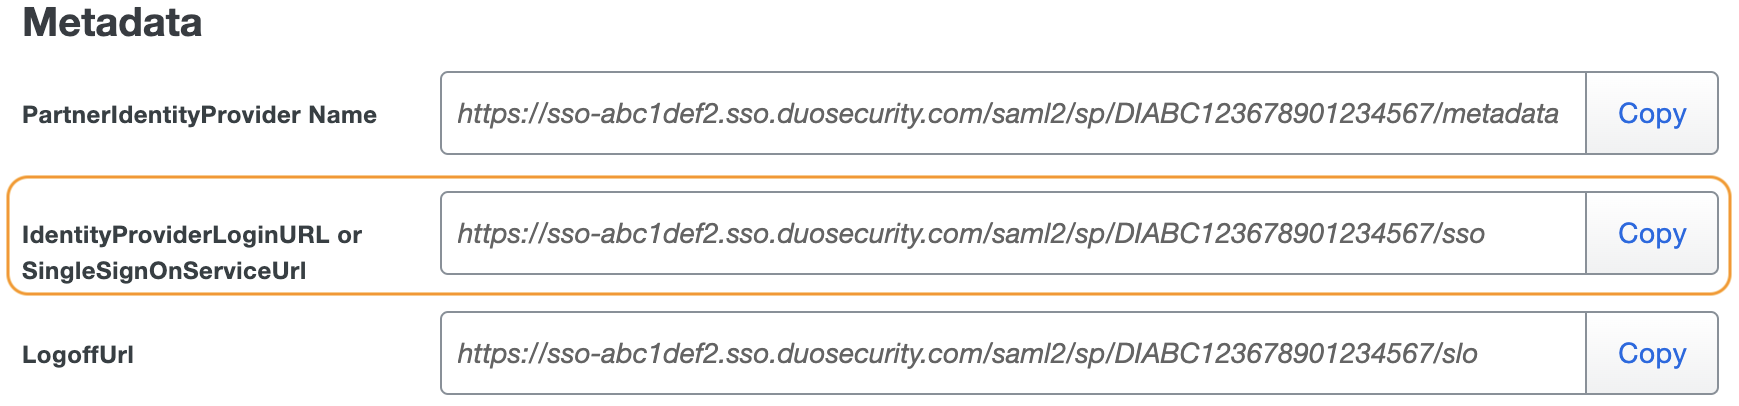 Duo CyberArk Privileged Access Identity Provider Login URL